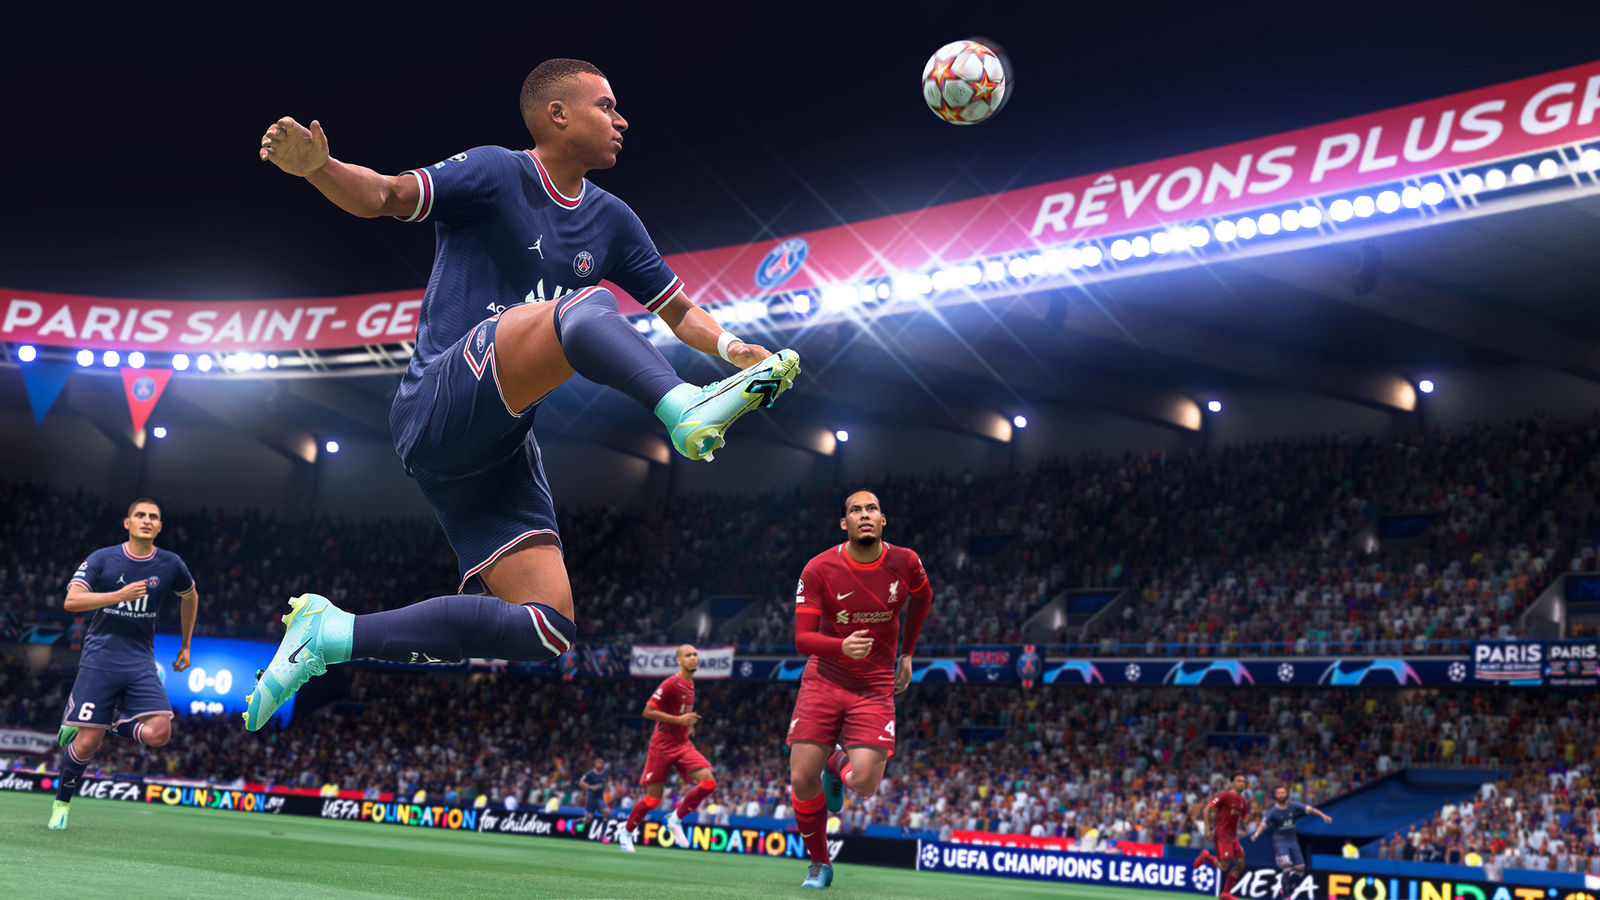 FIFA 22 Ultimate Edition (Origin) RU/PL/EN